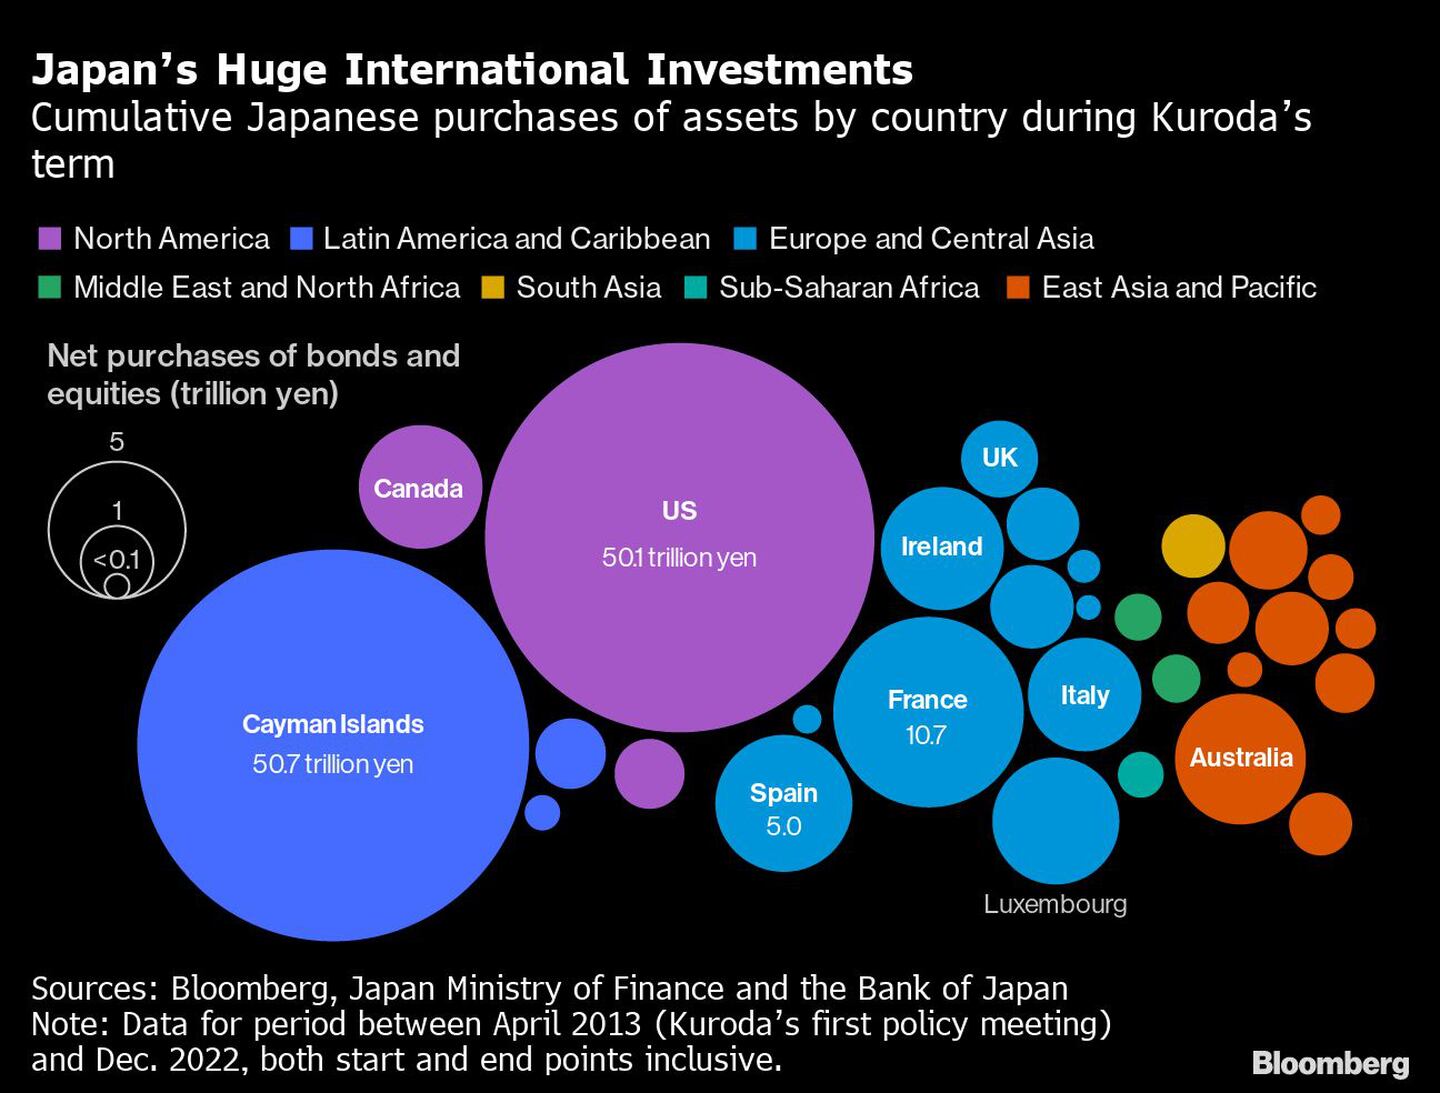 Enormes inversiones internacionales de Japón | Compras acumuladas de activos japoneses por país durante el mandato de Kurodasdfd